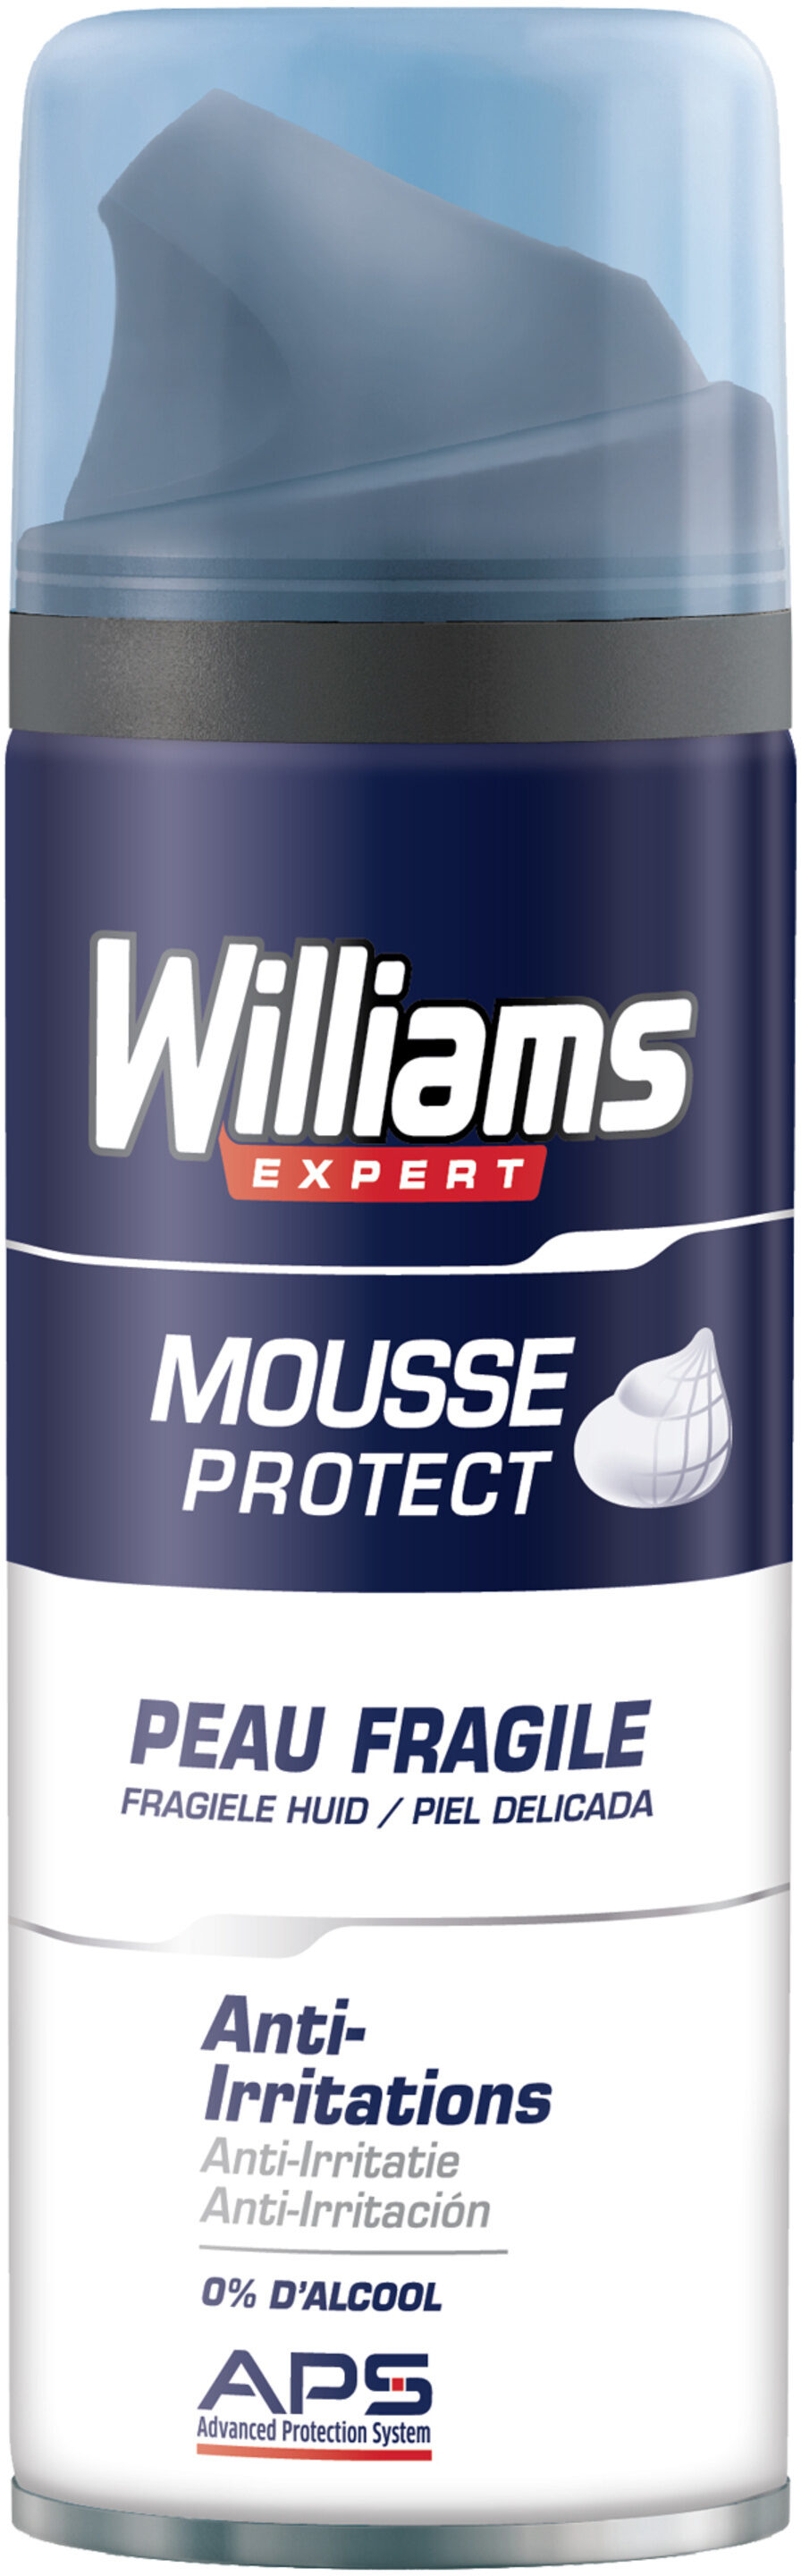 Williams Mousse à Raser Peau Fragile 200ml - Product - fr